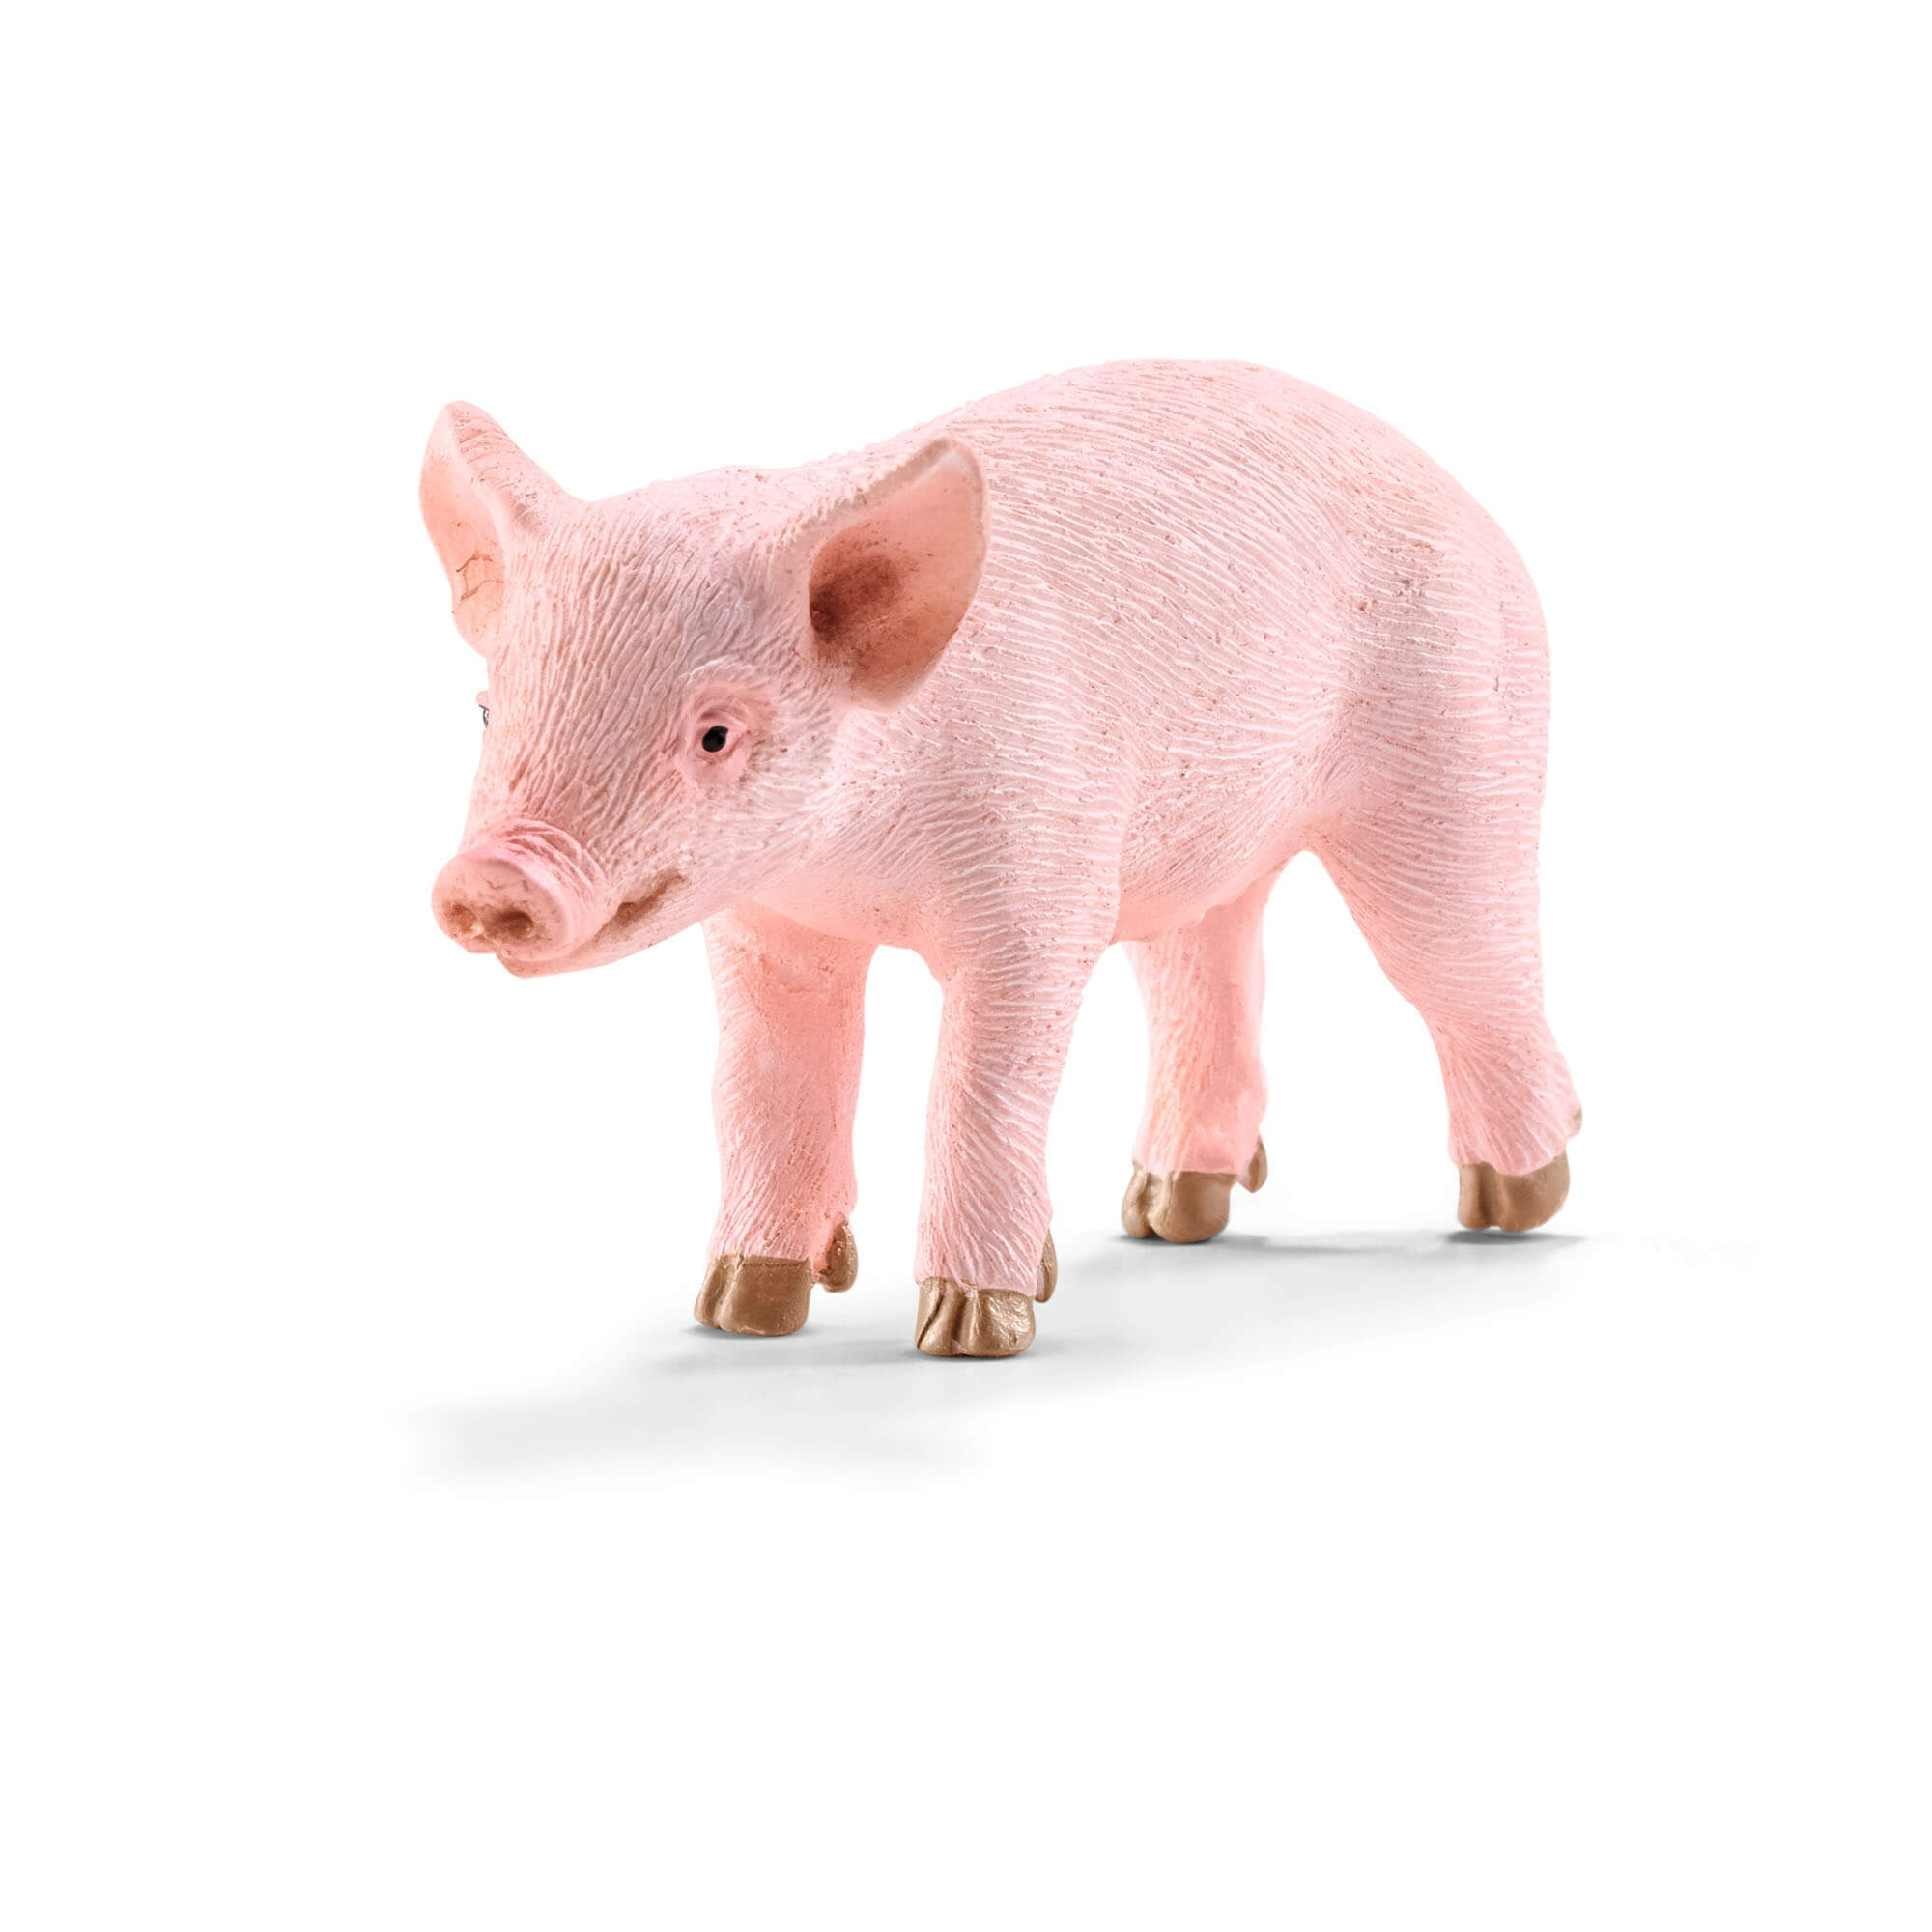 Schleich Farm World Standing Piglet Animal Figure